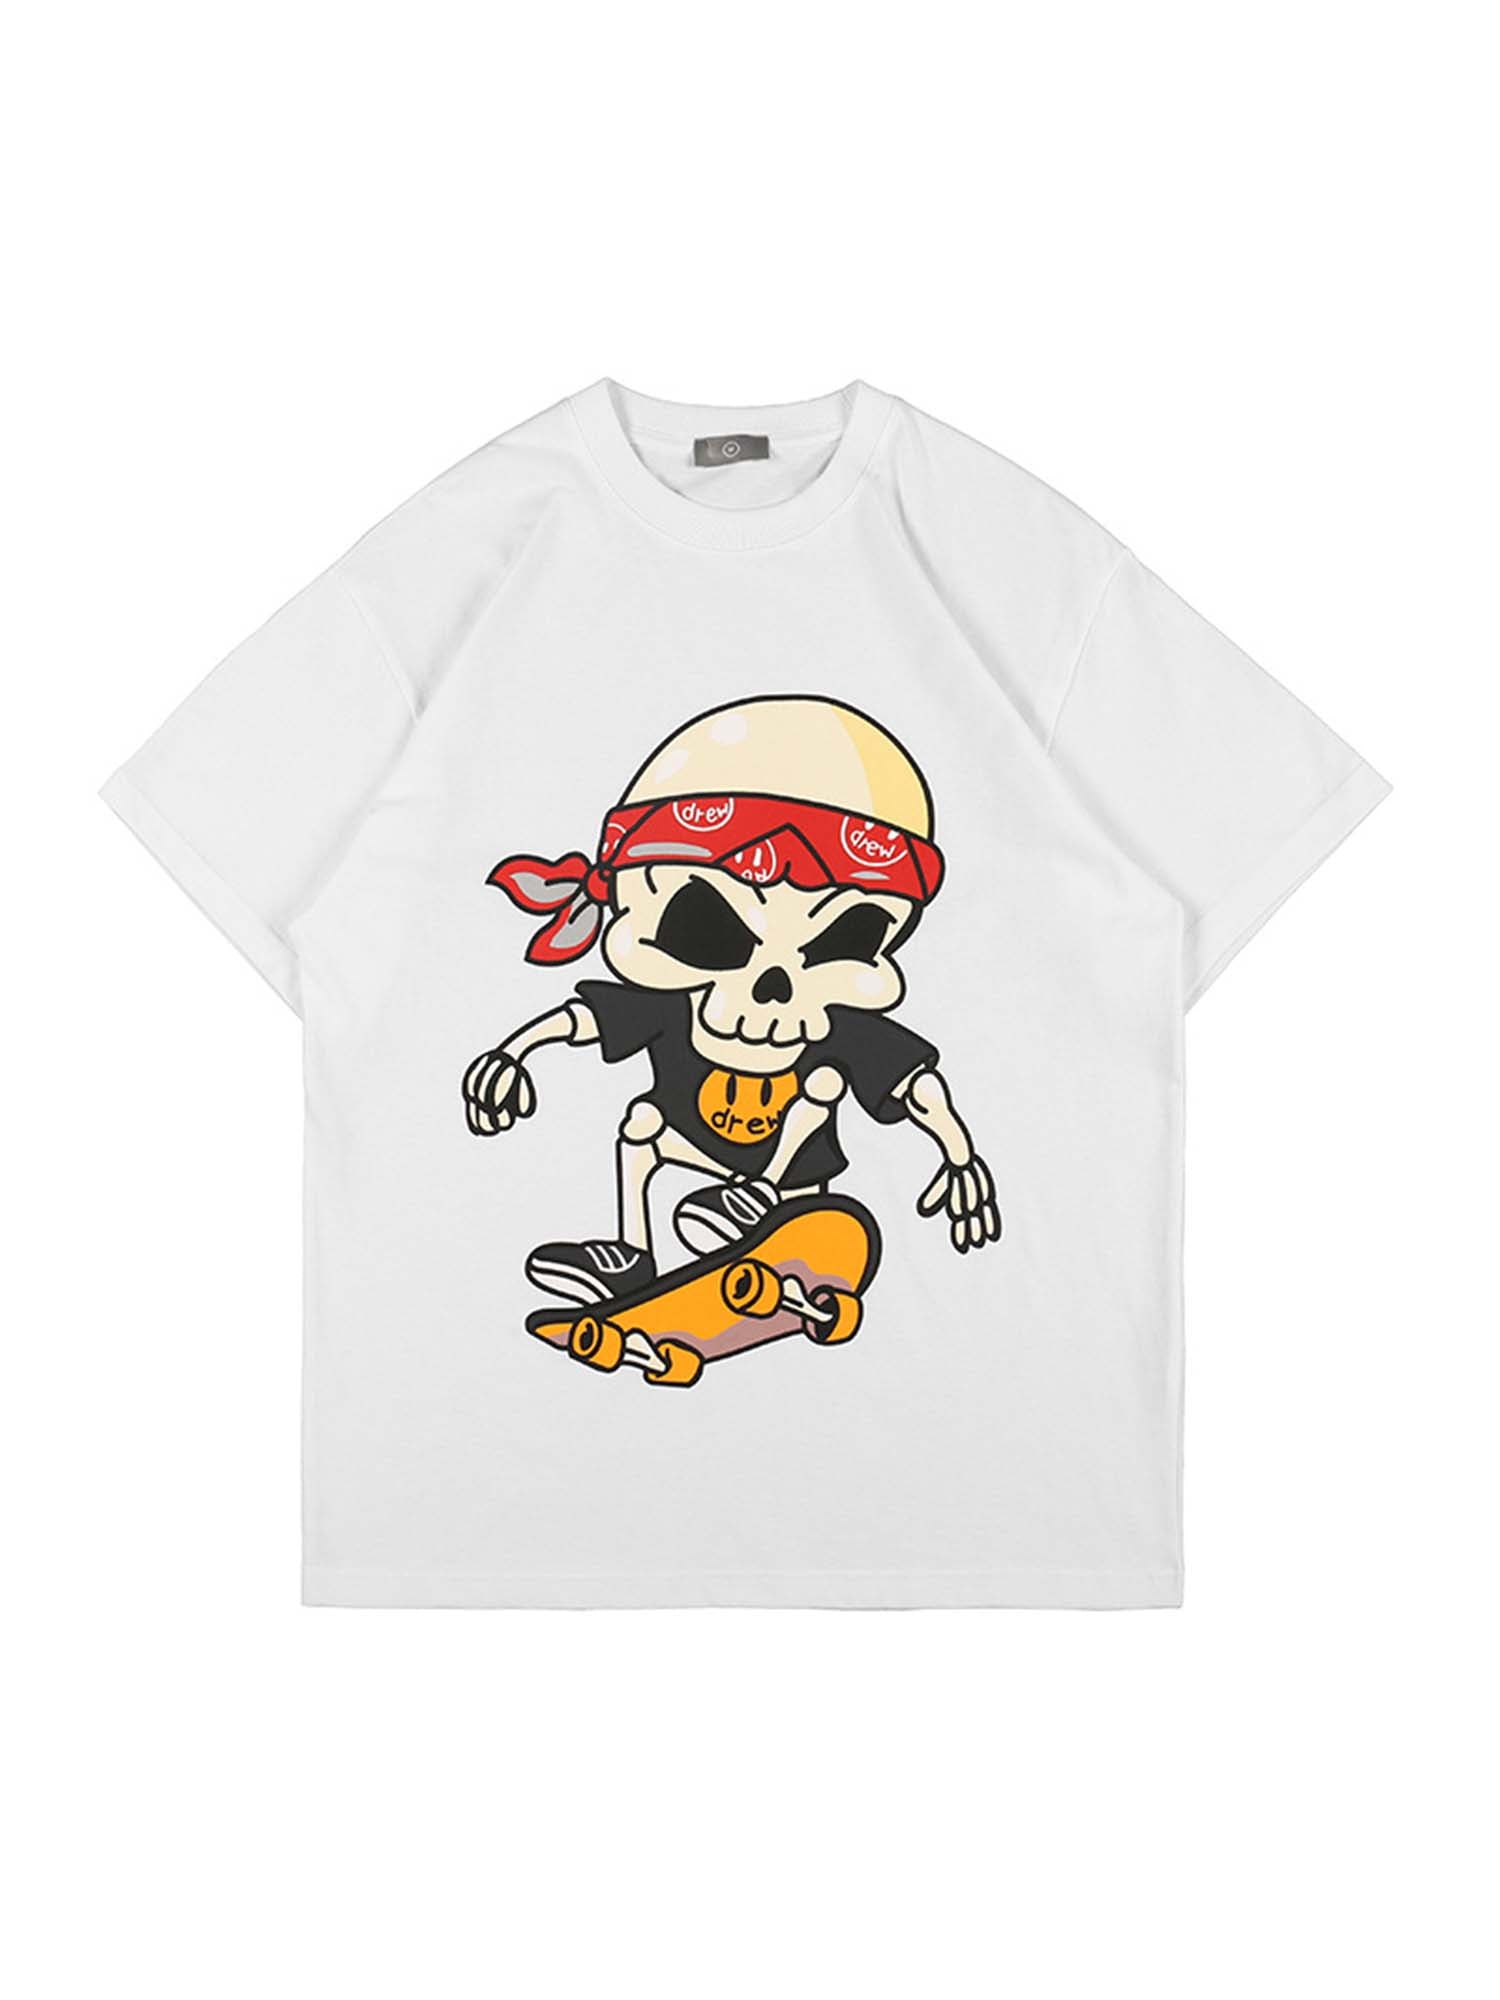 Justnotag Skateboard Skeleton Boy T-shirt à manches courtes en coton imprimé